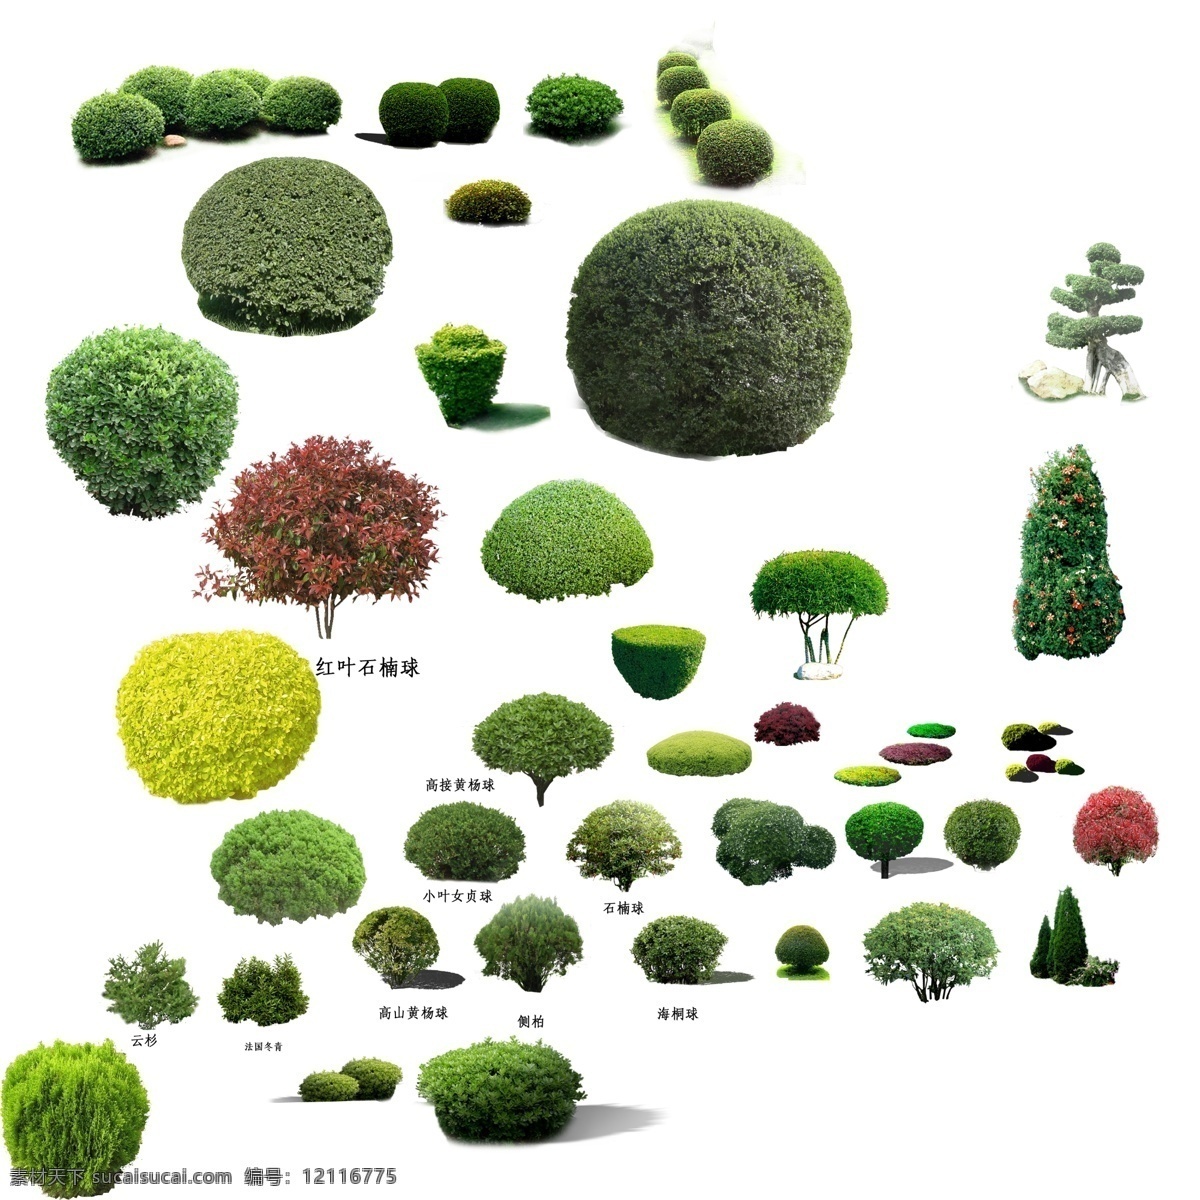 灌木球 矮灌木 球 绿化景观球 绿化后期 分层 绿化 绿化景观 环境设计 园林设计